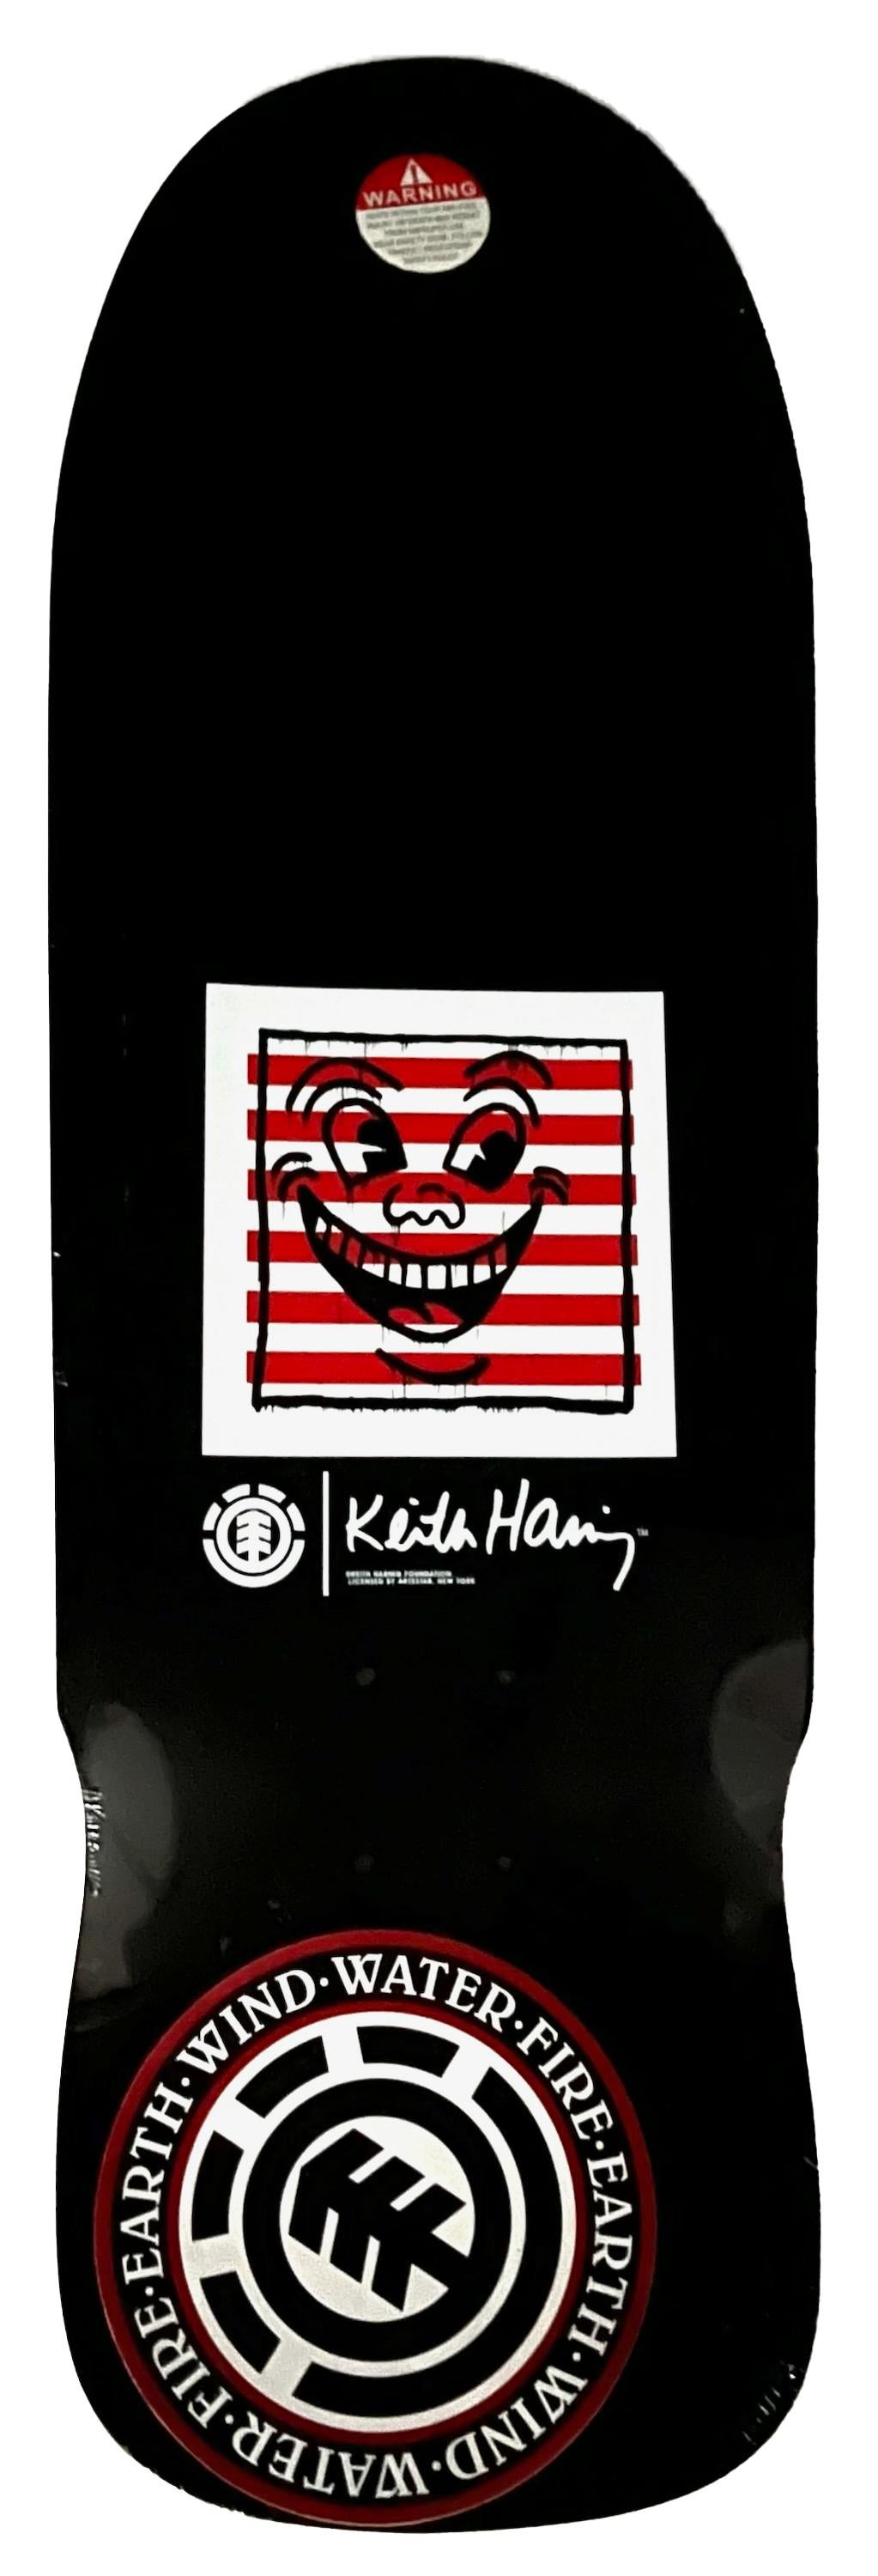 Keith Haring Skateboard Deck 2019 :
Skateboard Deck Keith Haring en édition limitée, épuisé, avec la marque déposée de l'artiste, qui représente l'imagerie emblématique de l'artiste. Cette œuvre est issue d'une collaboration à guichets fermés entre